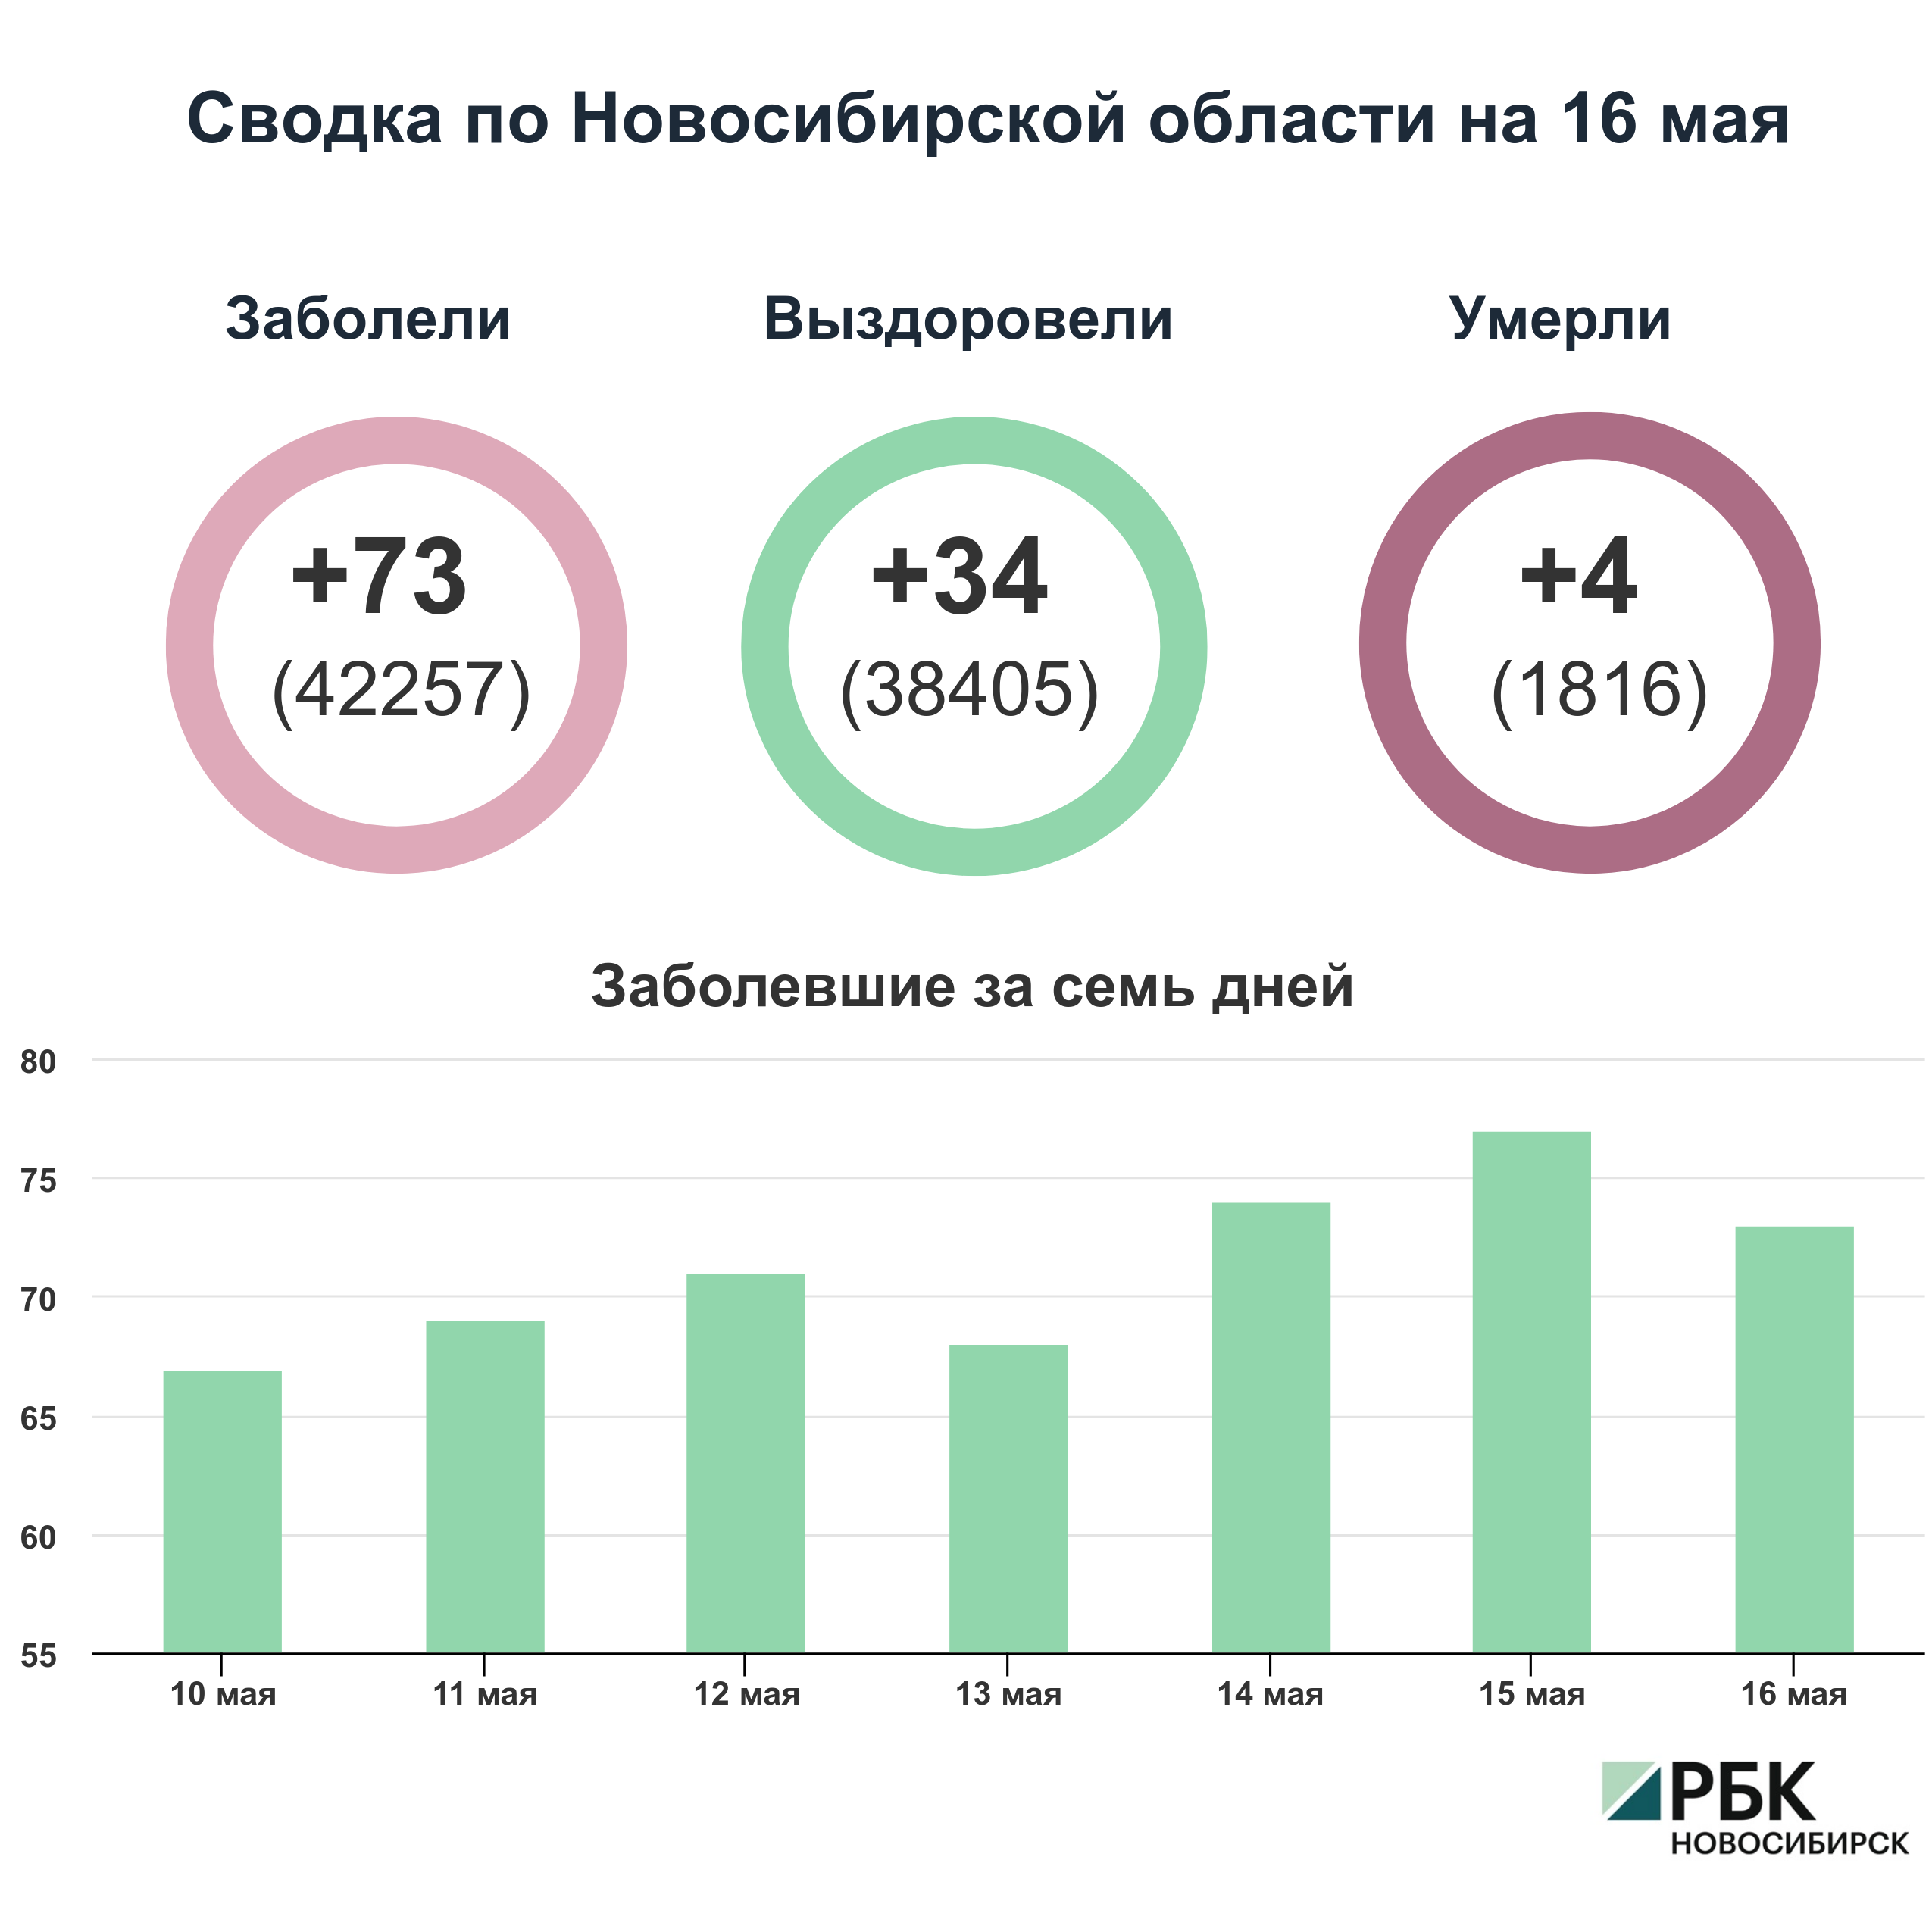 Коронавирус в Новосибирске: сводка на 16 мая